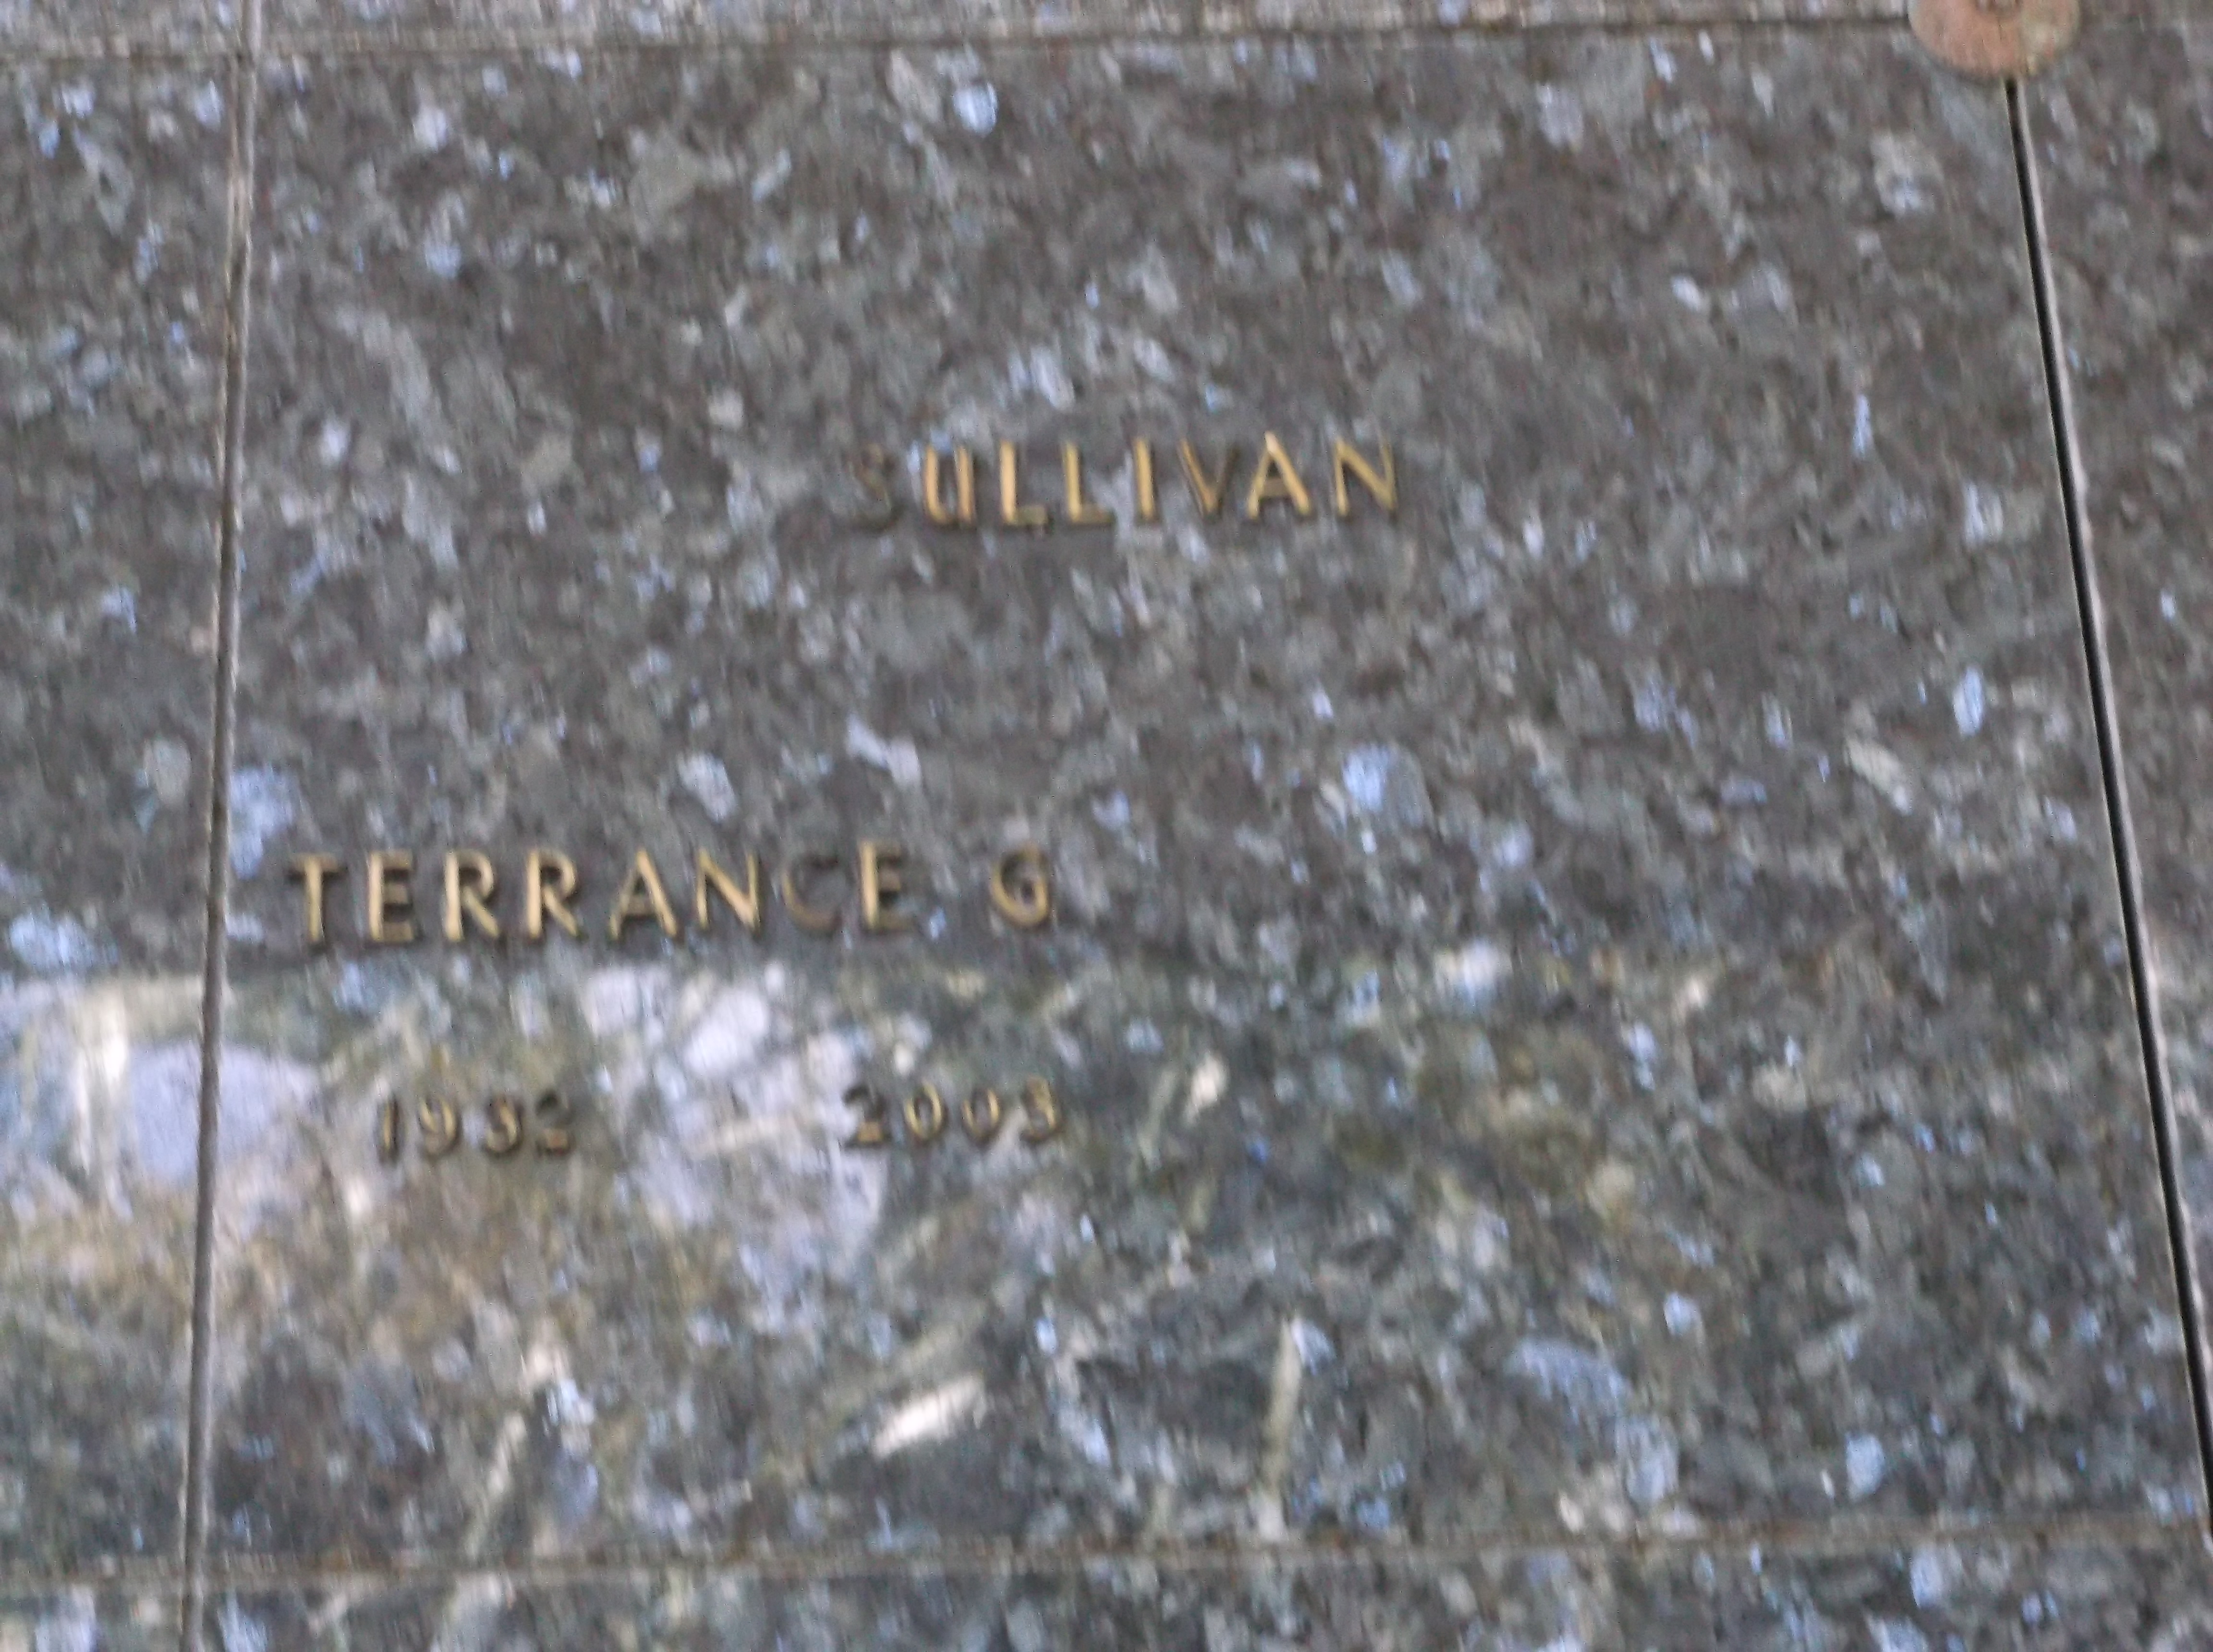 Terrance G Sullivan